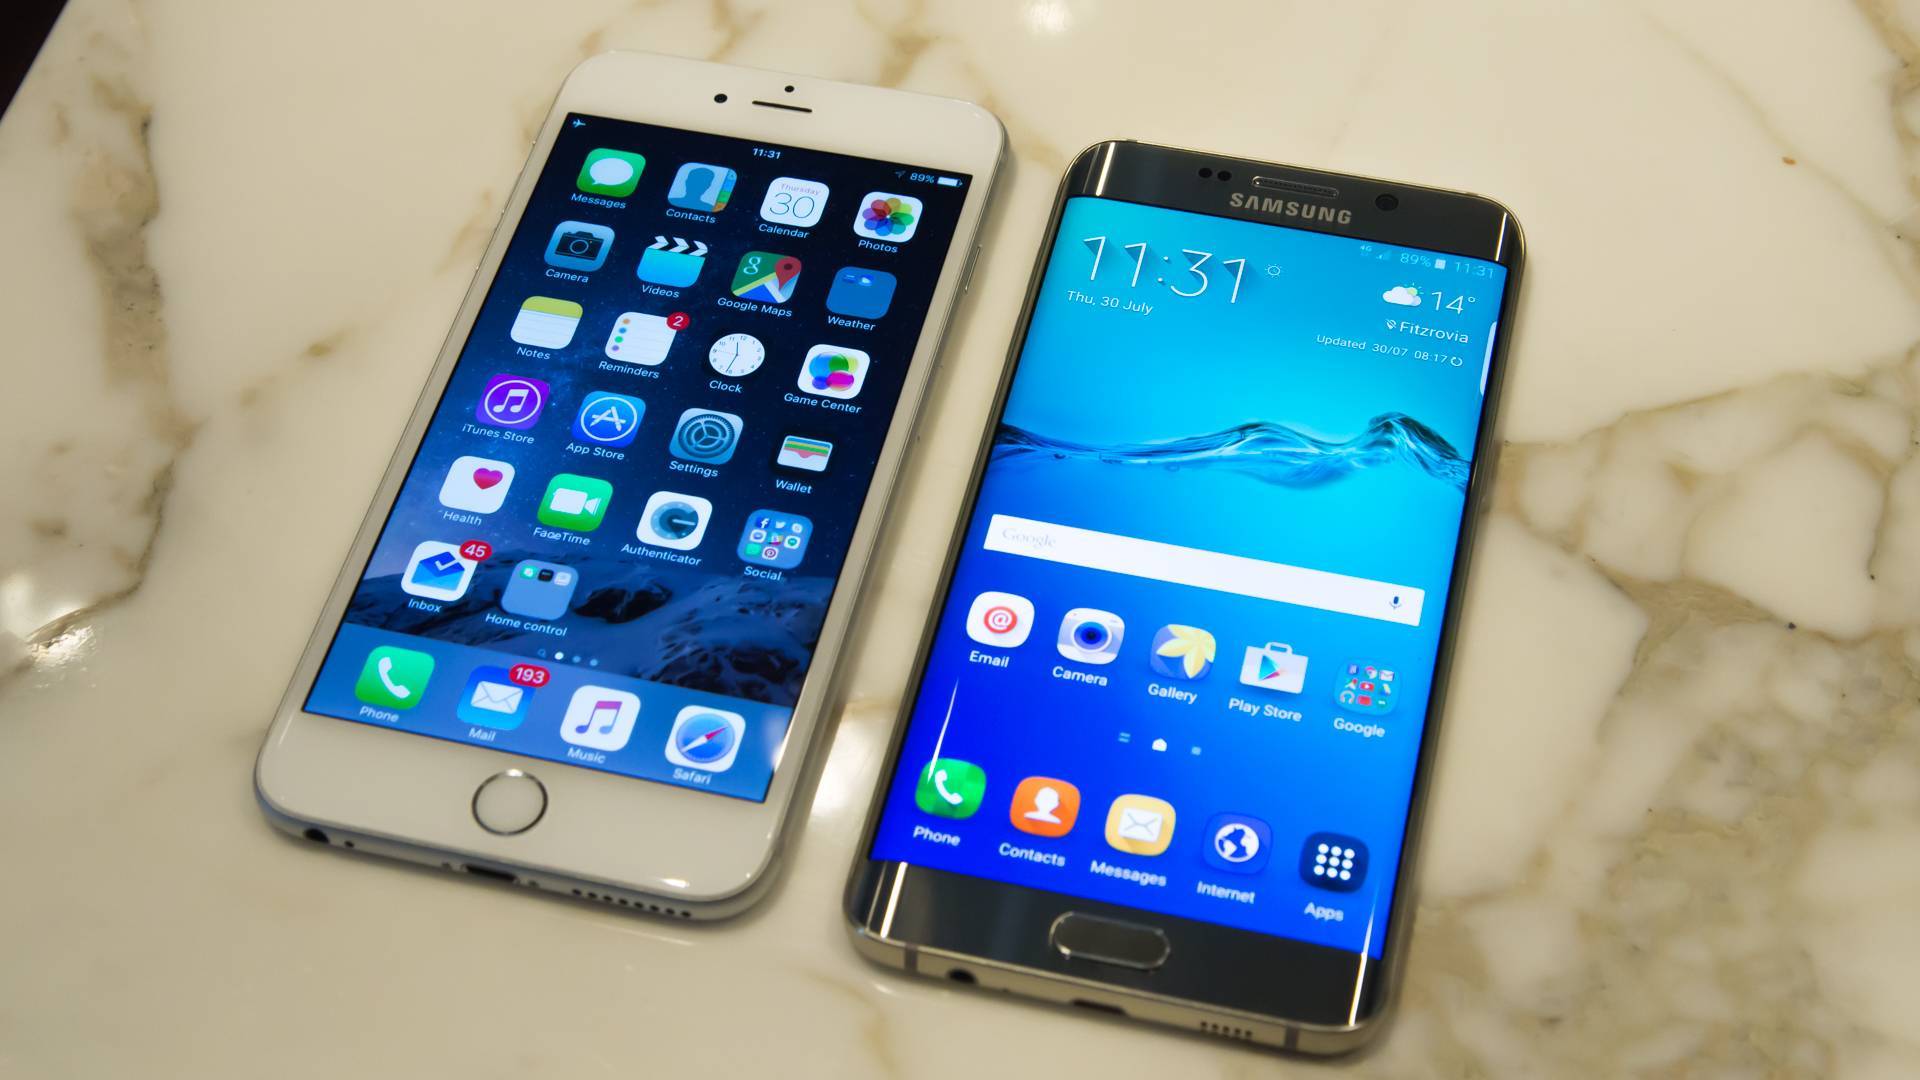 Samsun vs iphone. "самсунг" или "айфон", что лучше выбрать, что и в чем лучше? - gadgetmedia